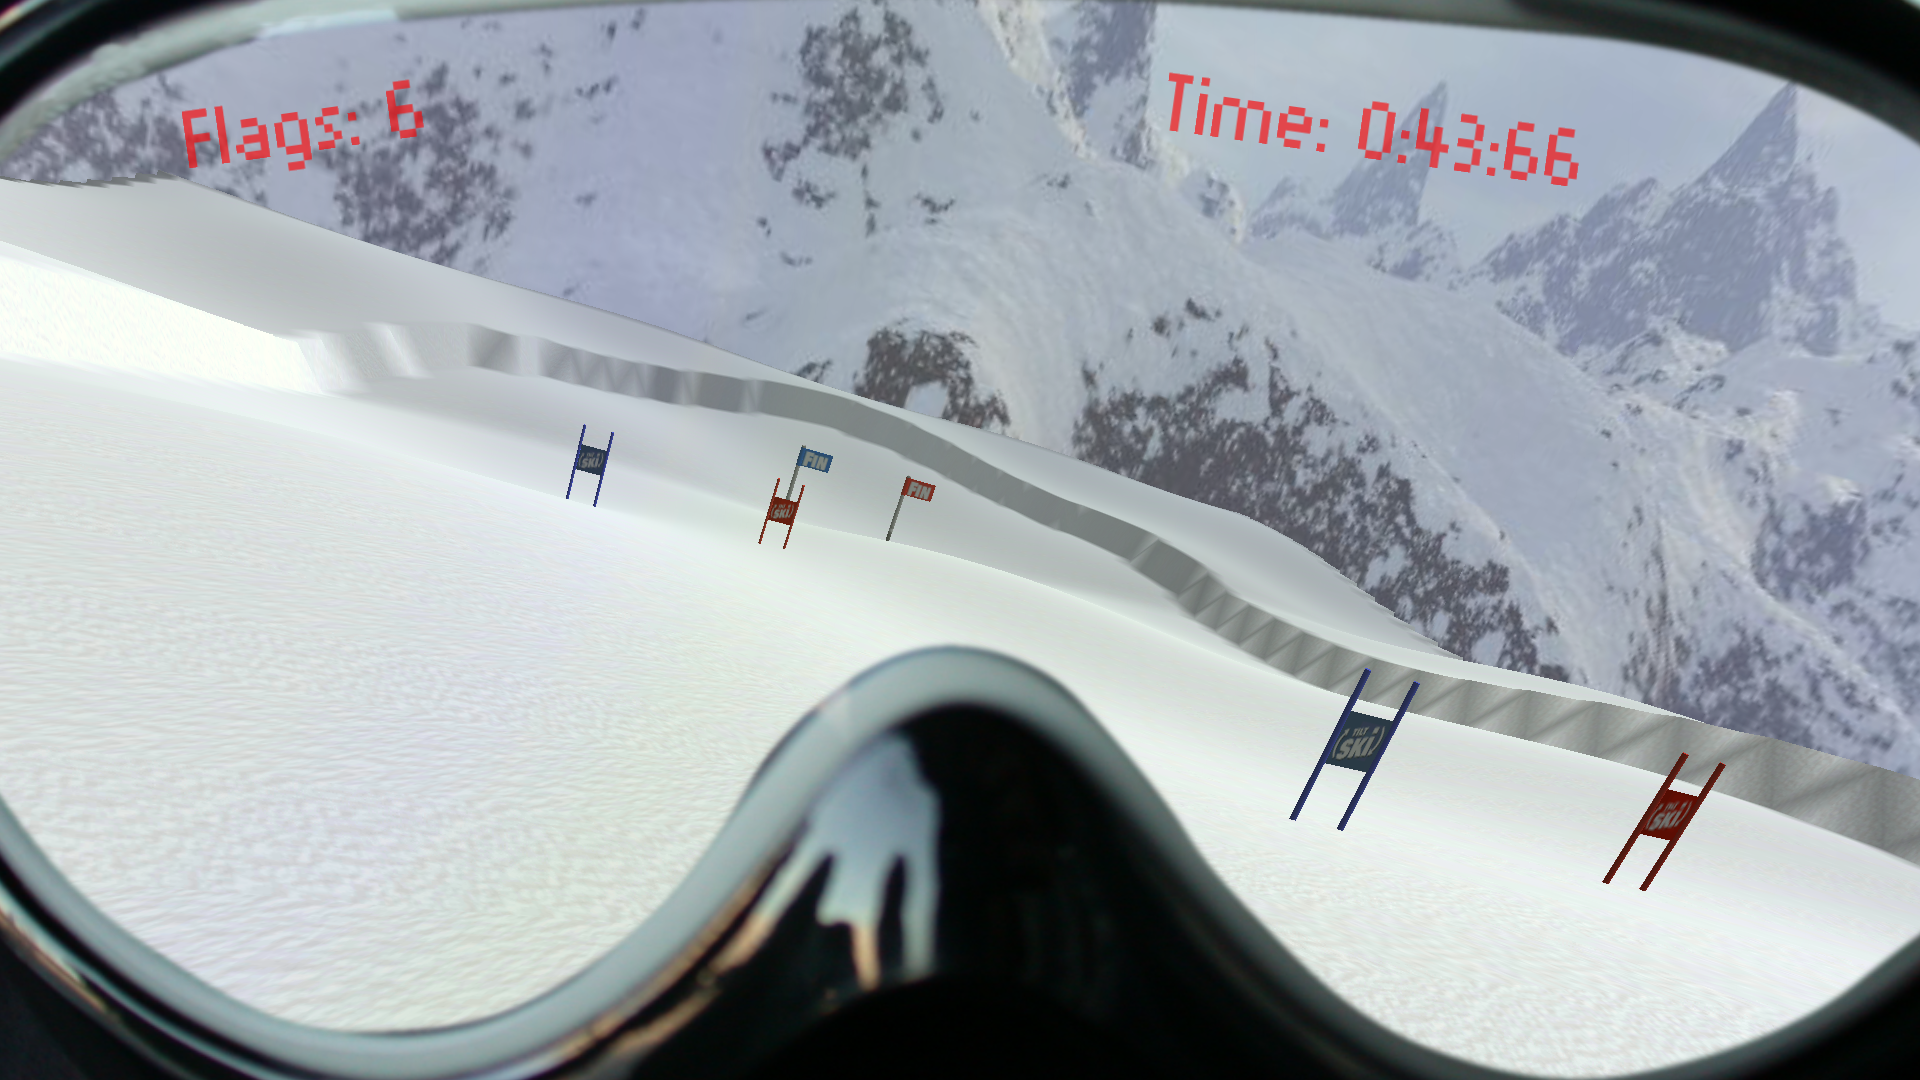 The Tilt Ski Actual Game Screenshot